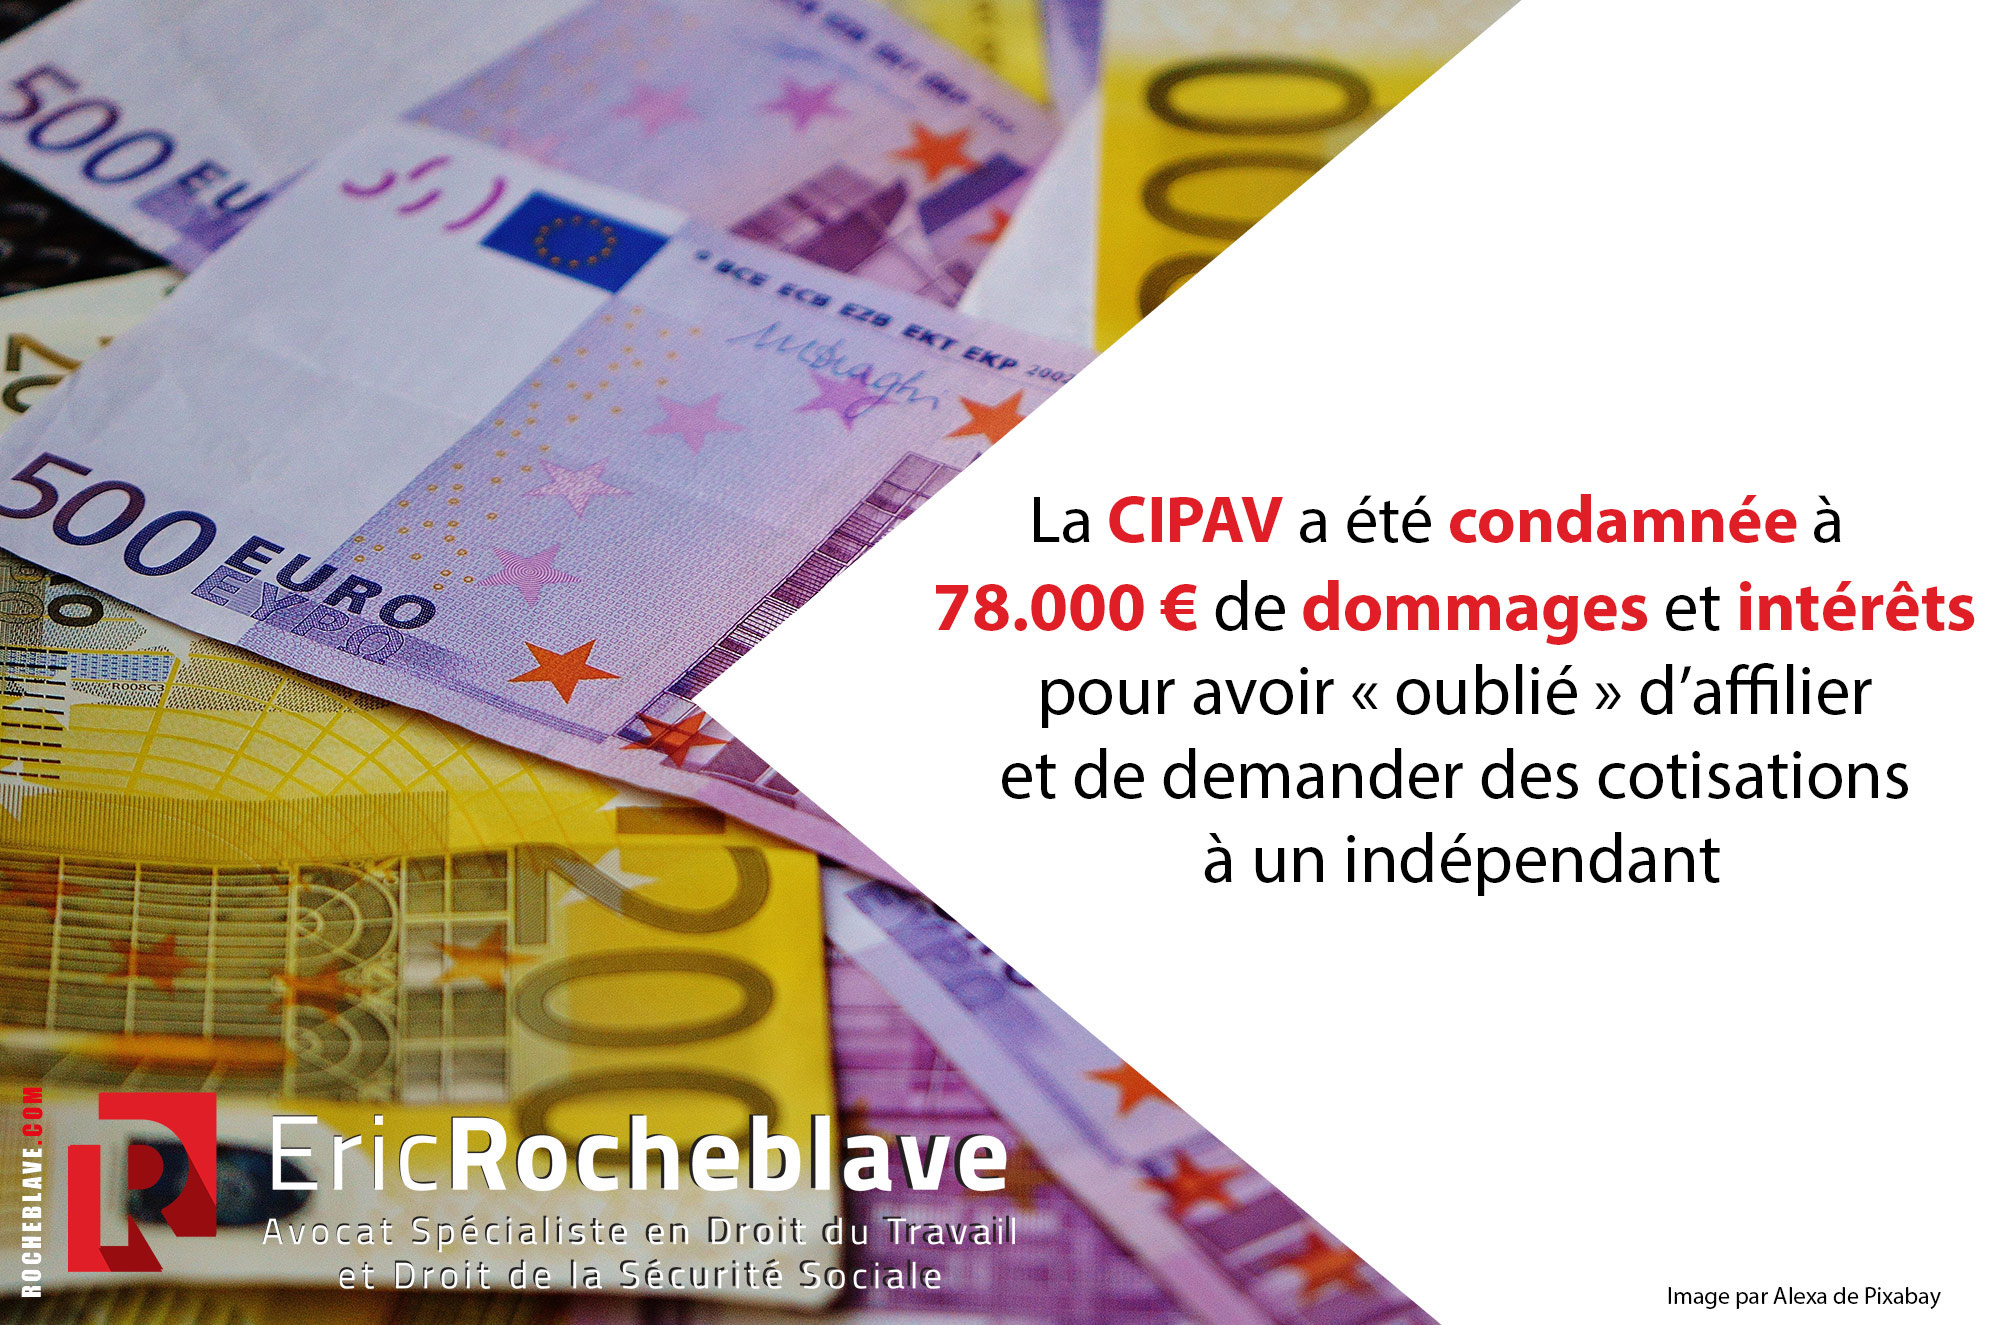 La CIPAV a été condamnée à 78.000 € de dommages et intérêts pour avoir « oublié » d’affilier et de demander des cotisations à un indépendant